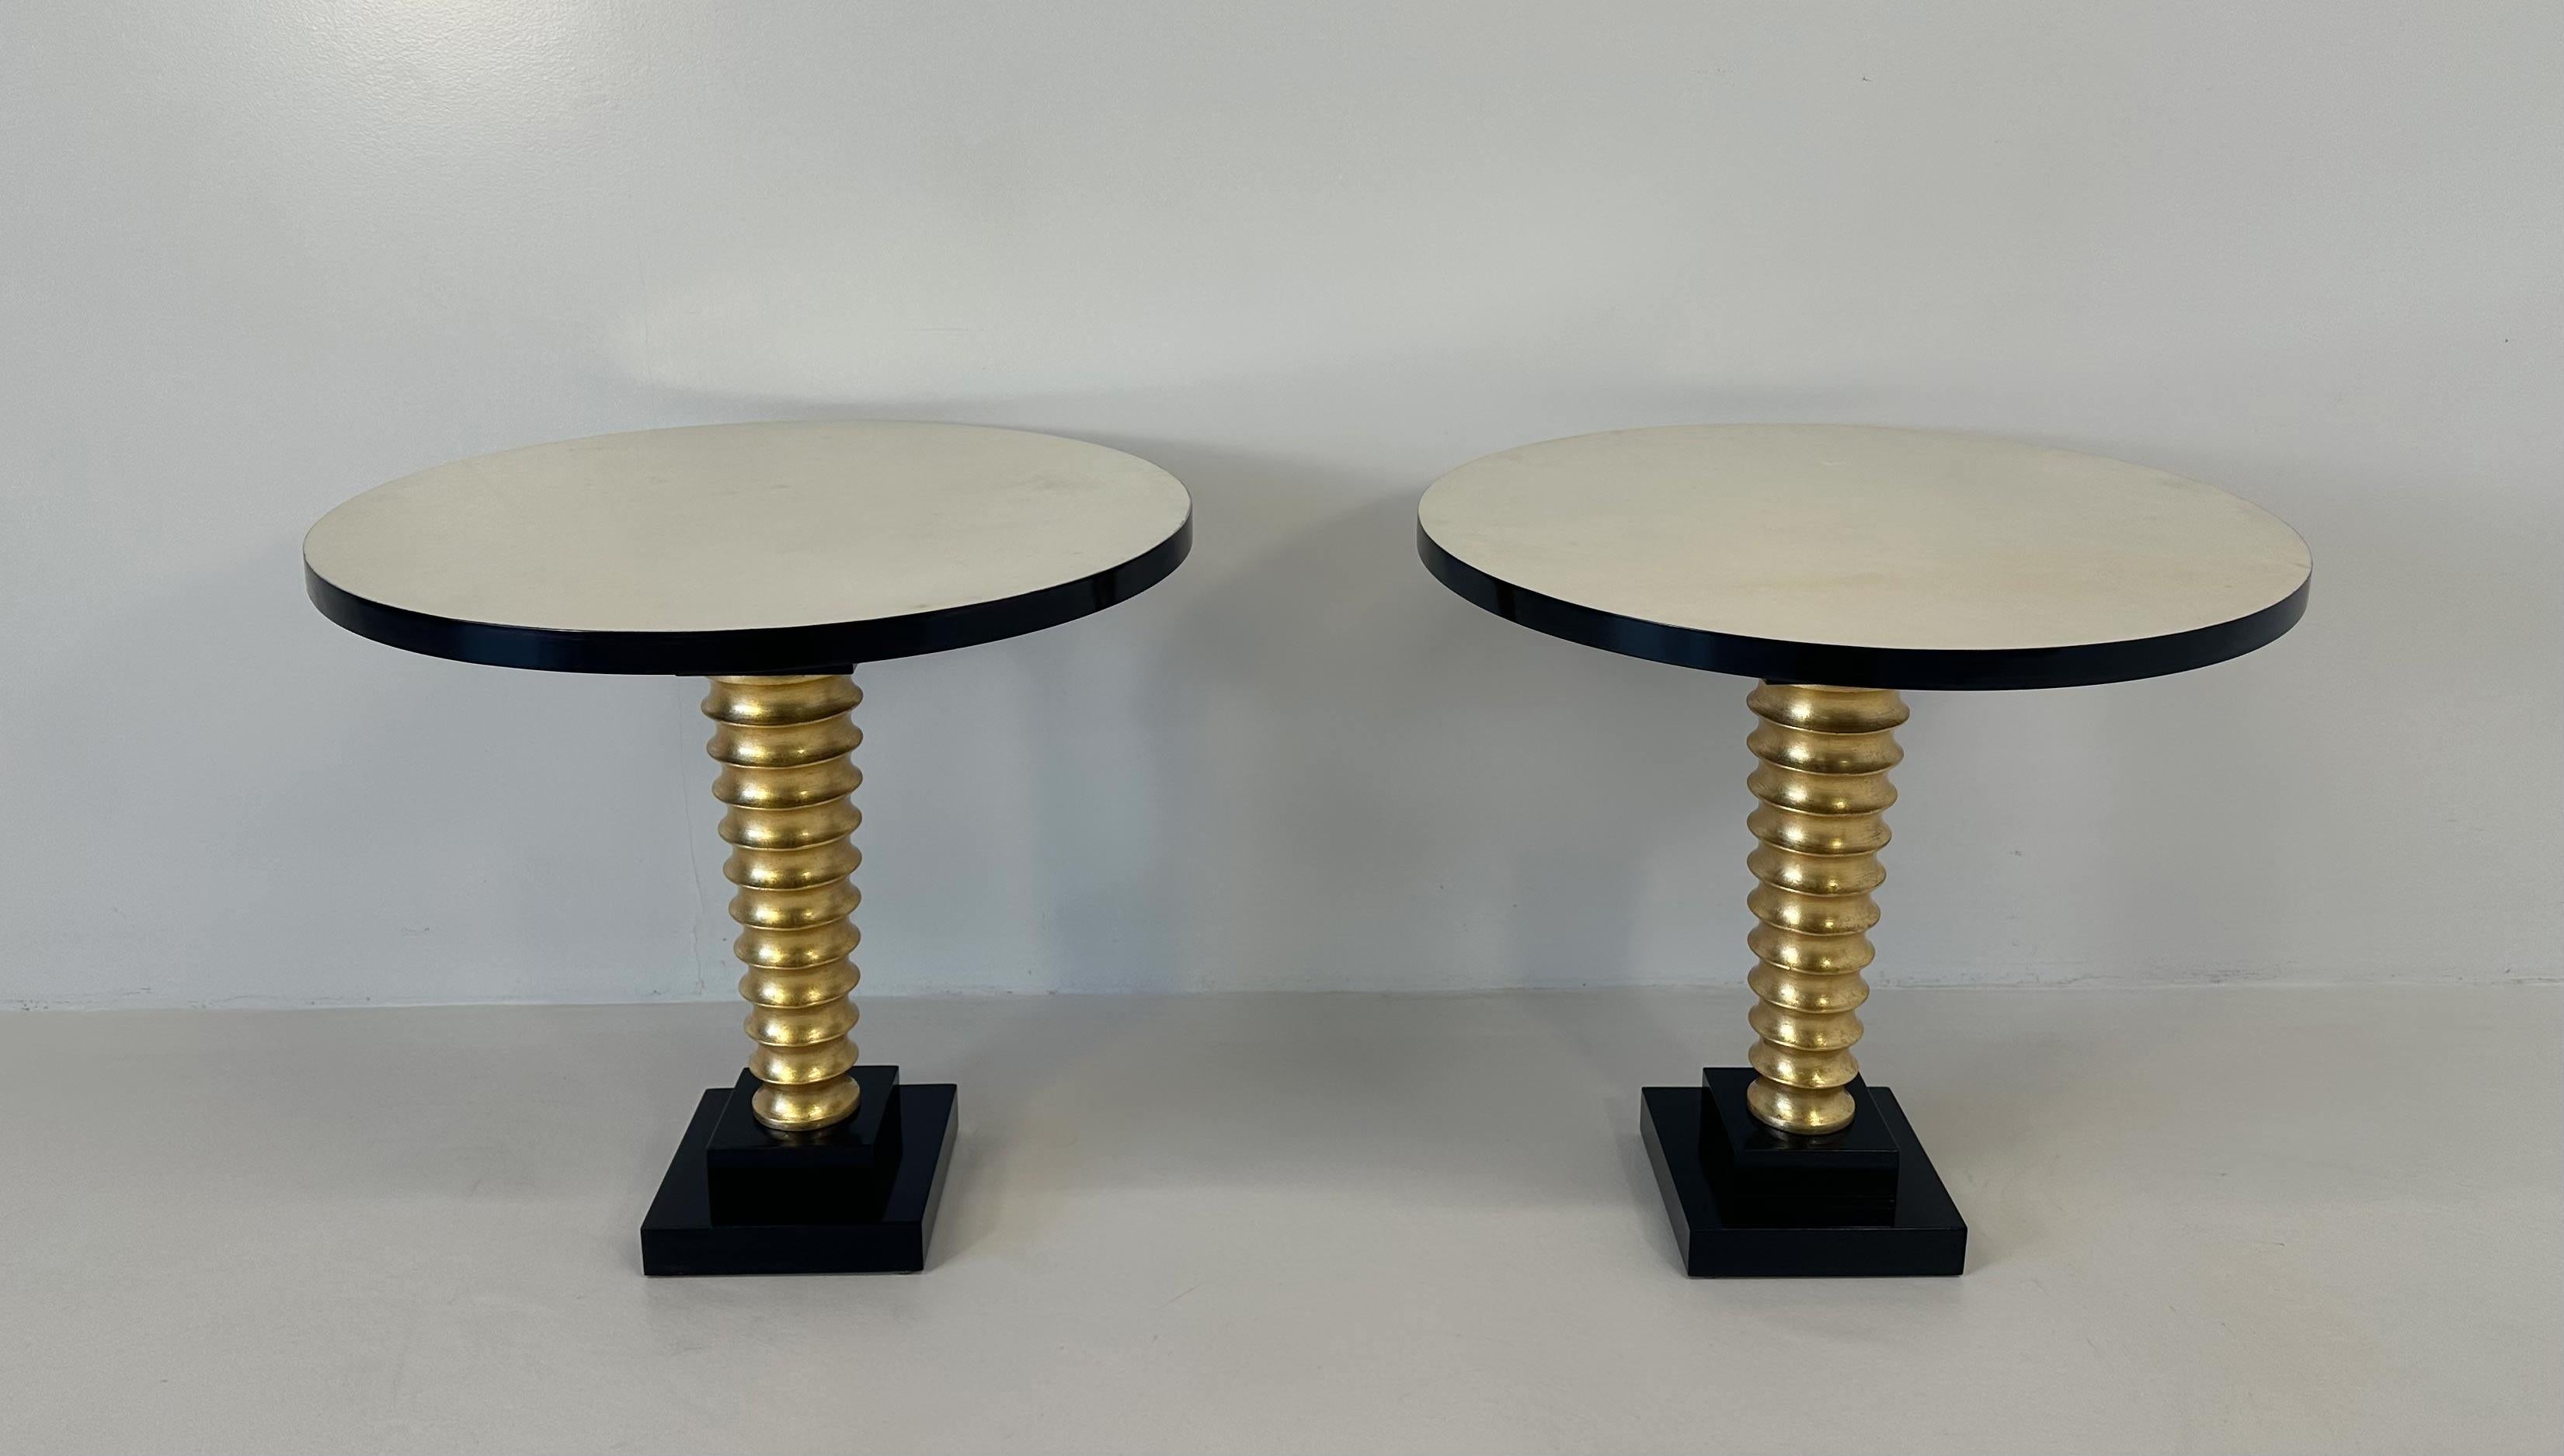 Dieses elegante Paar Couchtische im Art-Déco-Stil wurde in Italien hergestellt. 
Die Platte ist aus Pergament, die Details wie die Profile der Platte und des Sockels sind schwarz lackiert, während das Bein aus gedrechseltem Holz mit Blattgold